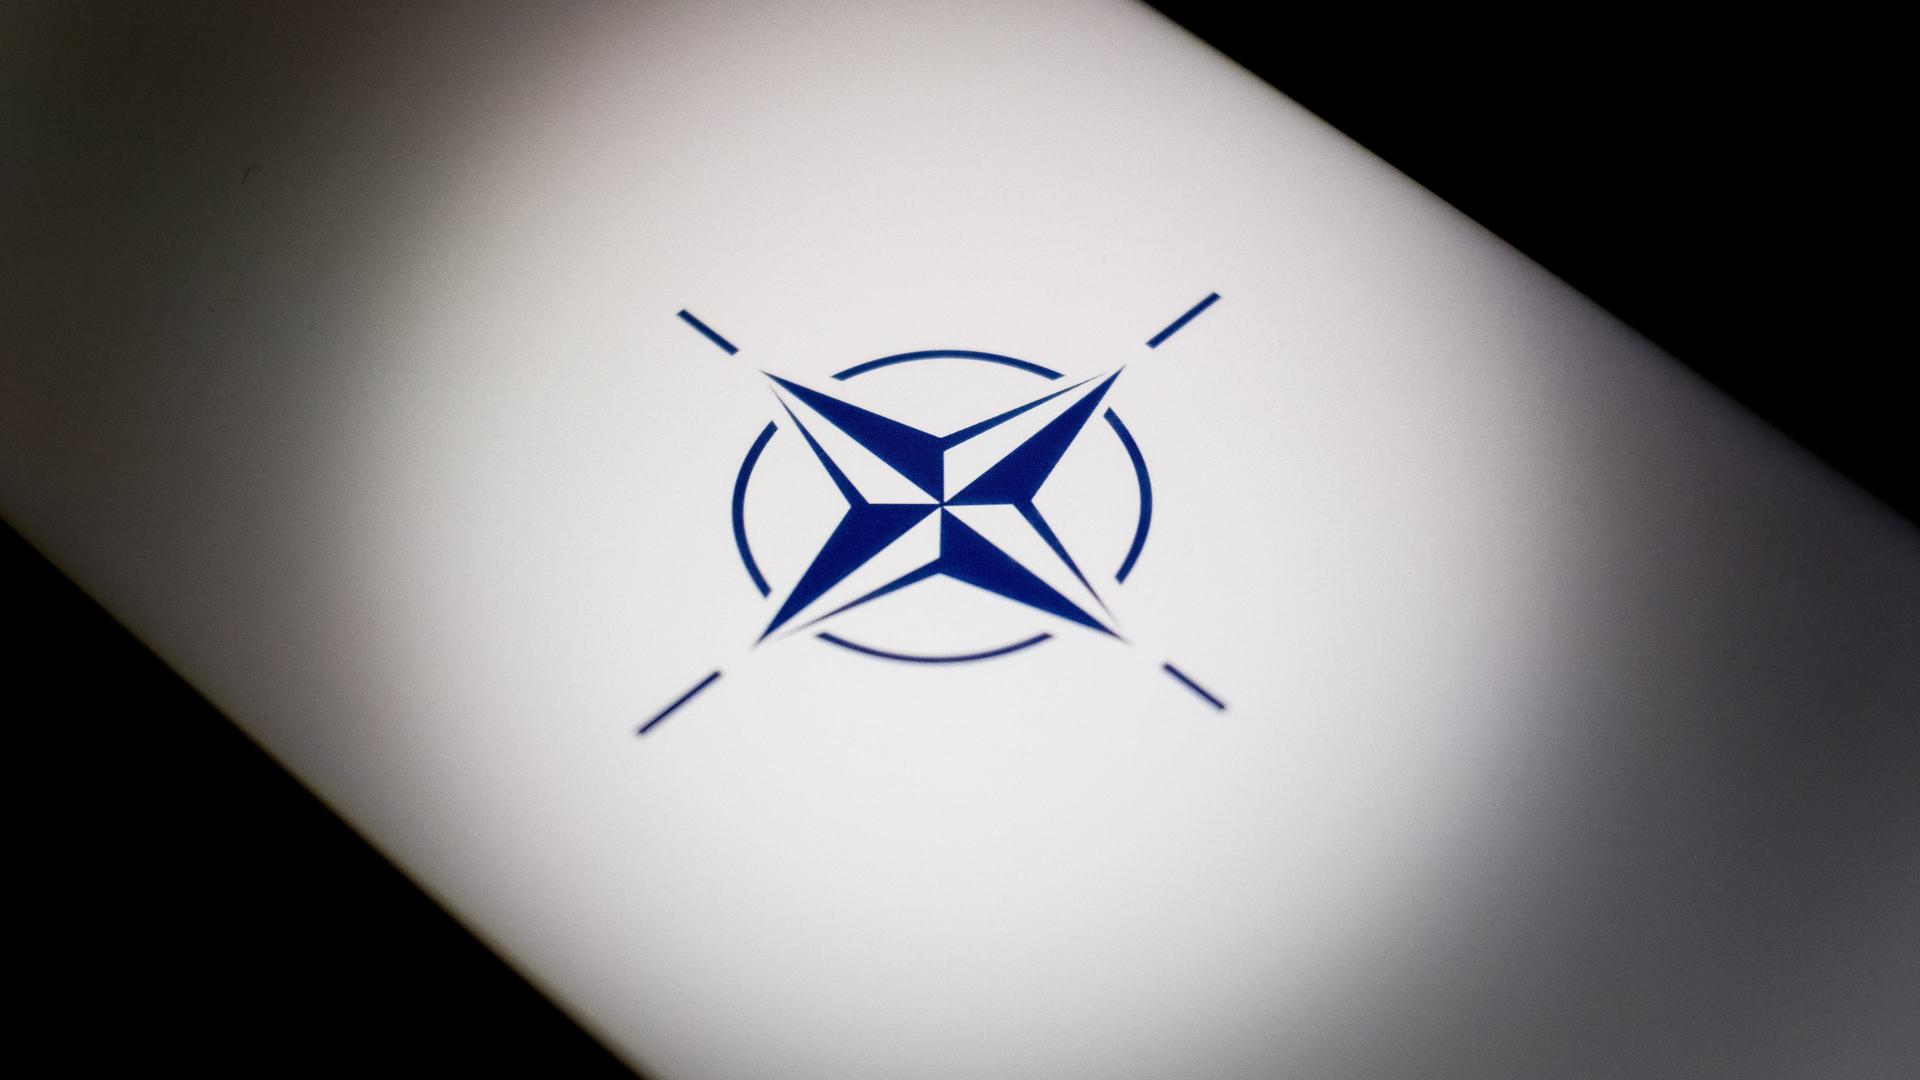 Ein hinterleuchtetes NATO-Logo ist zu sehen.